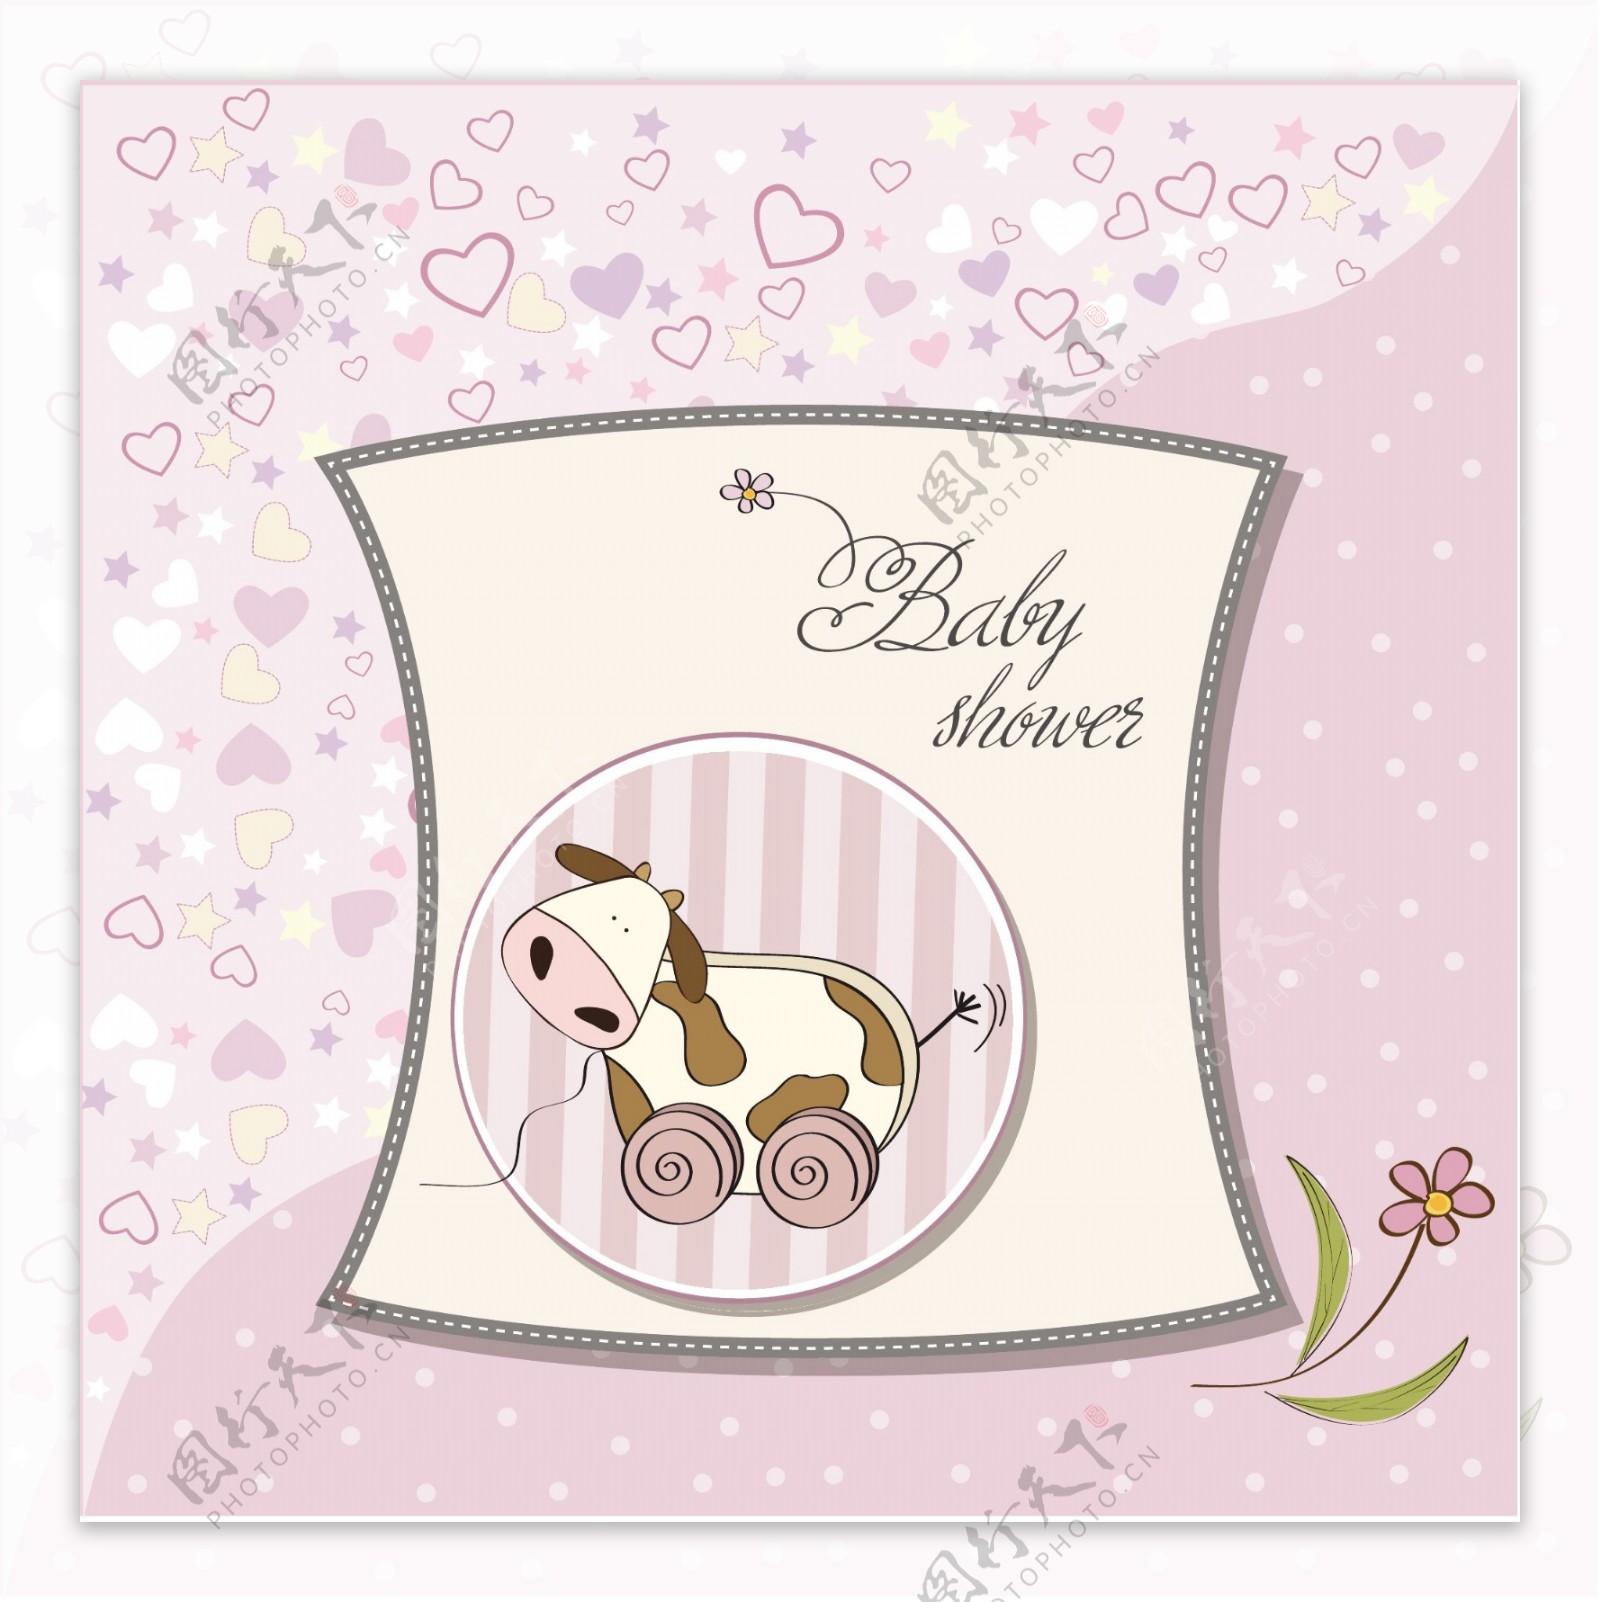 婴儿淋浴卡与可爱的奶牛玩具